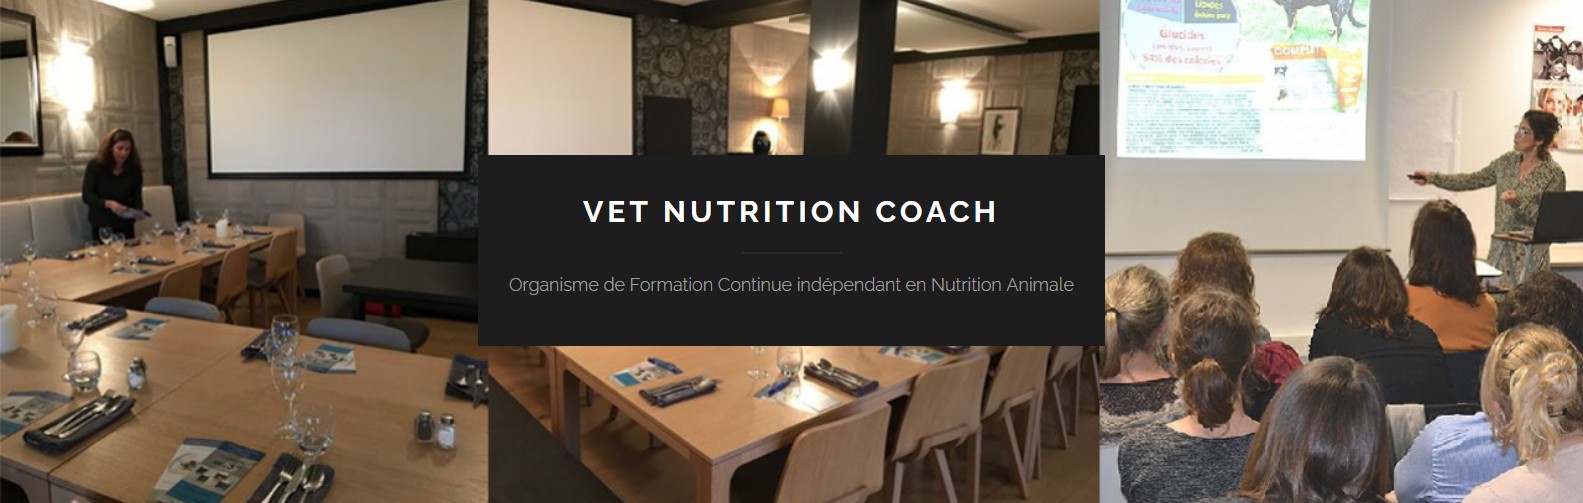 Vet-Nutrition Coach: organisme de formation continue indépendant en nutrition animale